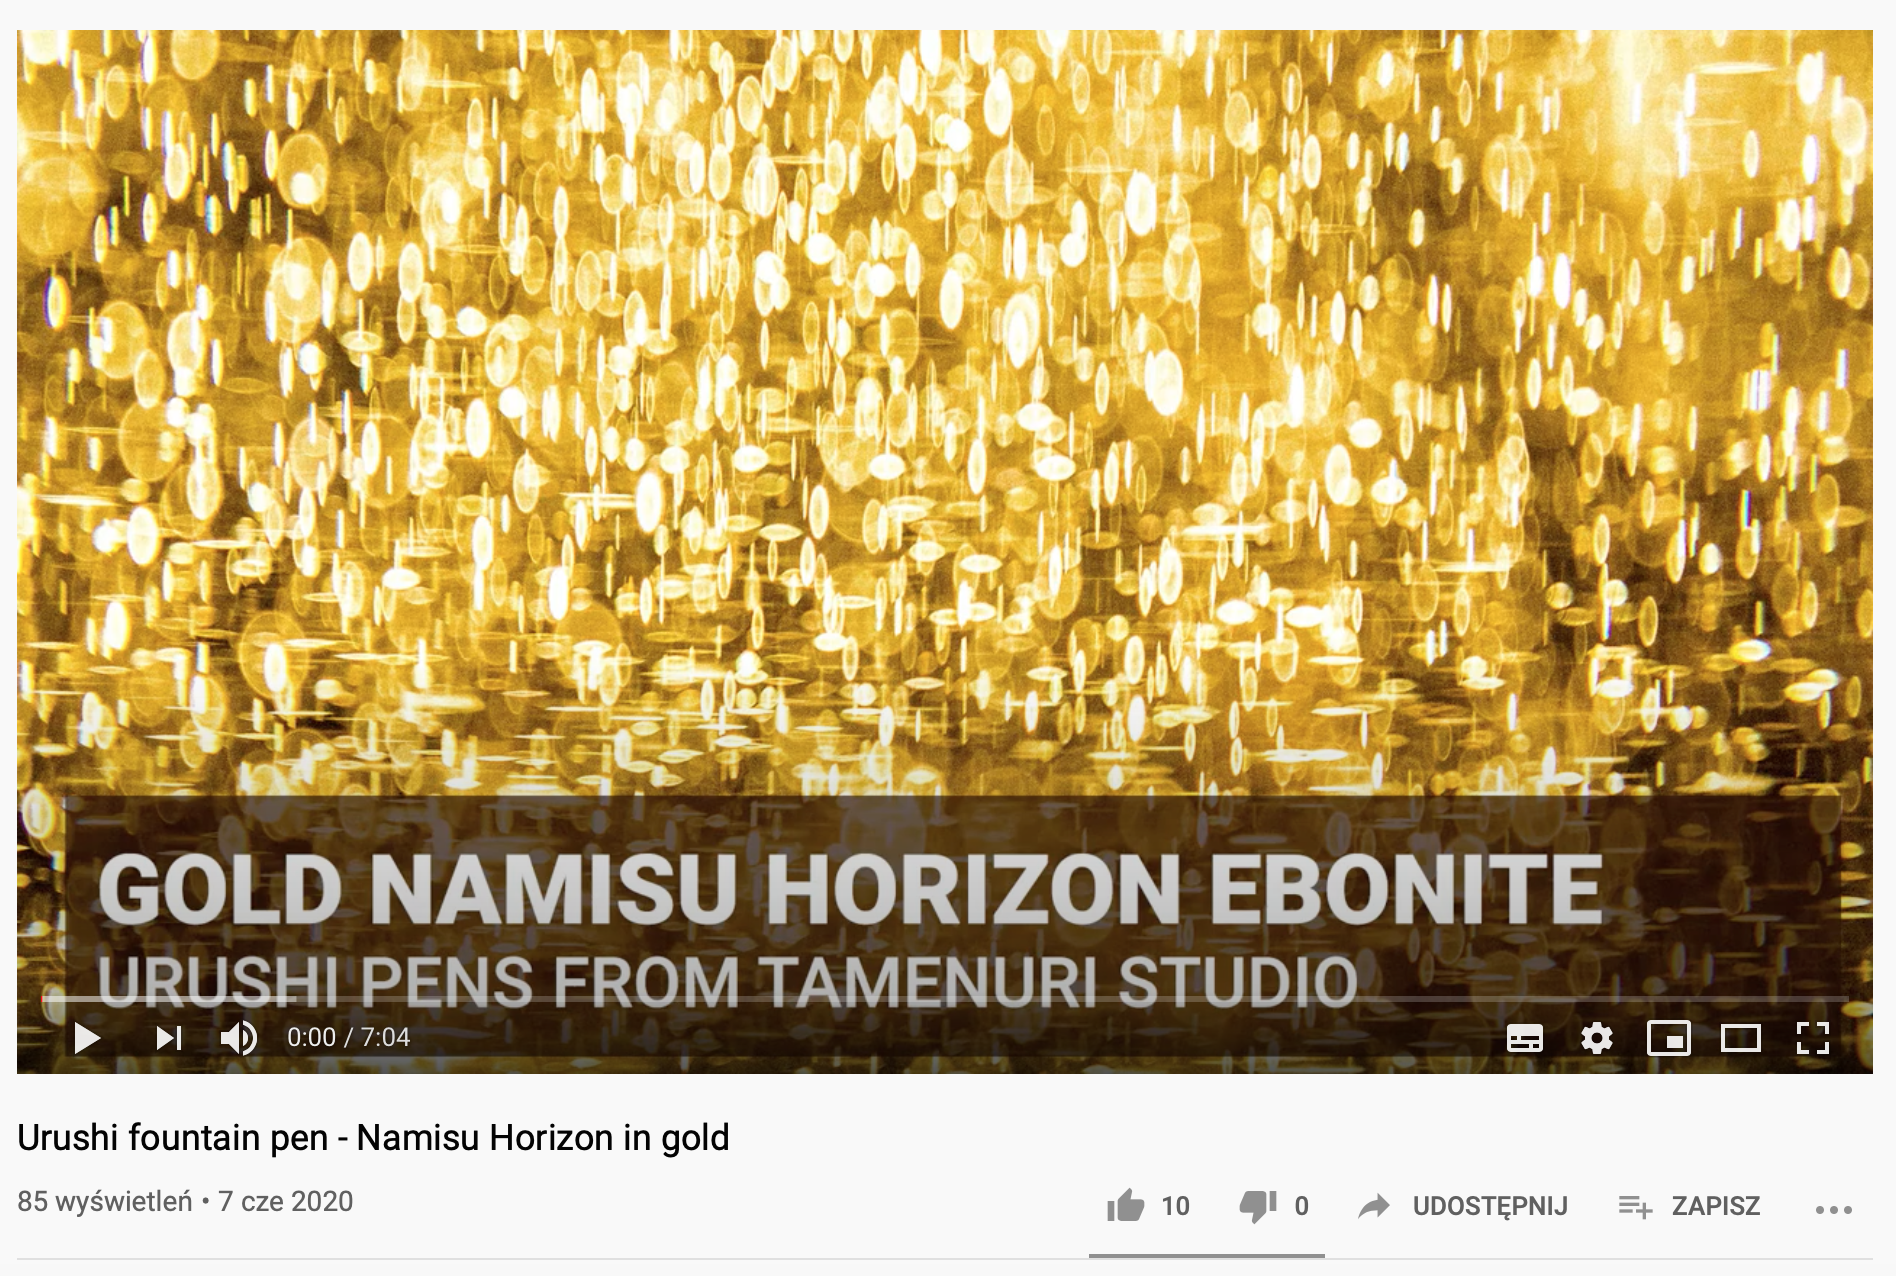 Namisu Horizon Ebonite in Gold urushi